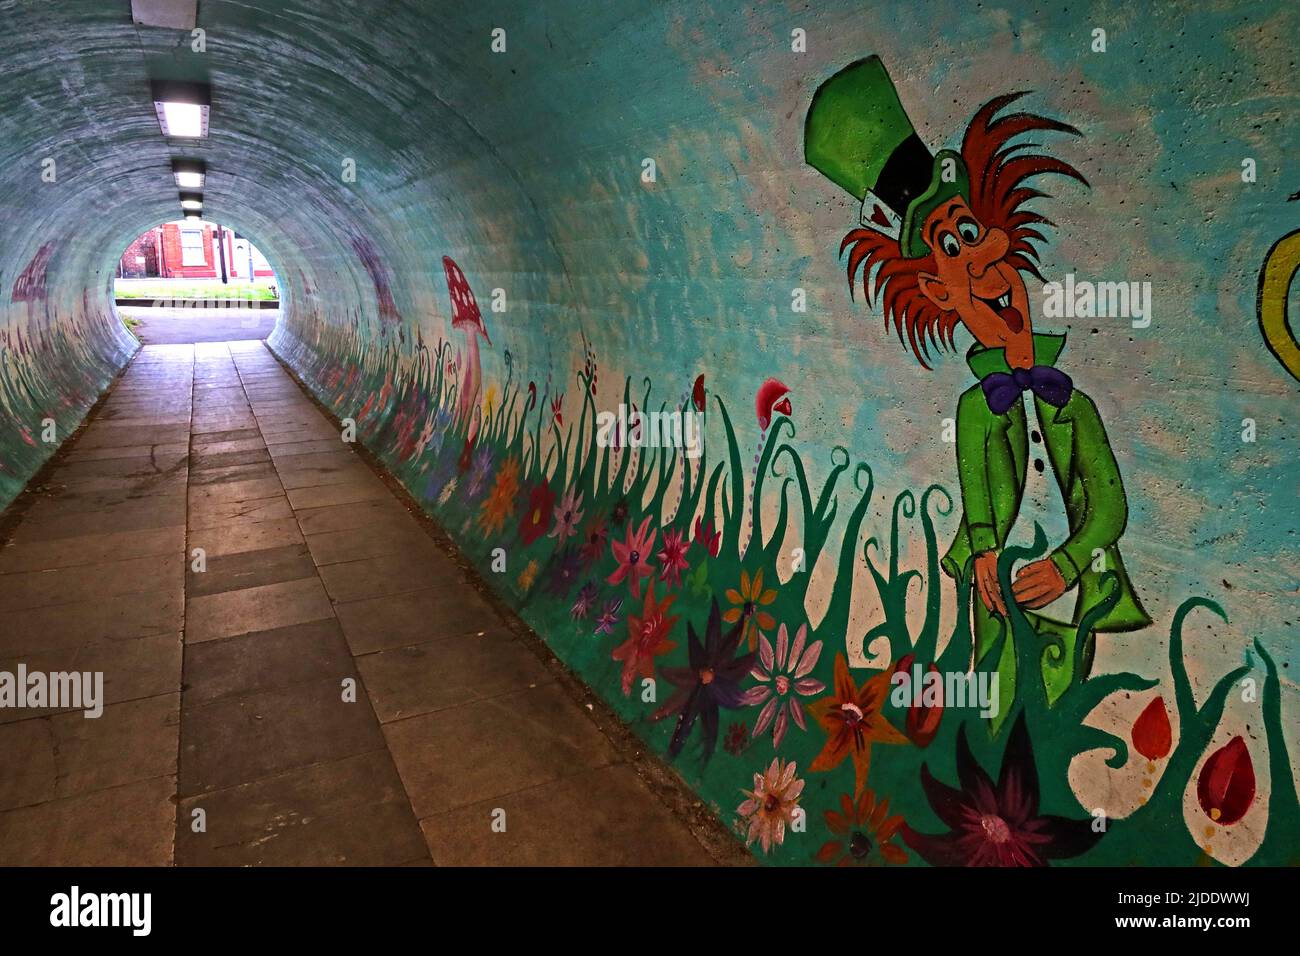 Le mad hatter d'Alice in Wonderland, personnage de Lewis Carroll peint dans le tunnel piétonnier de Latchford, Knutsford Rd, Warrington, WA4 1JR Banque D'Images